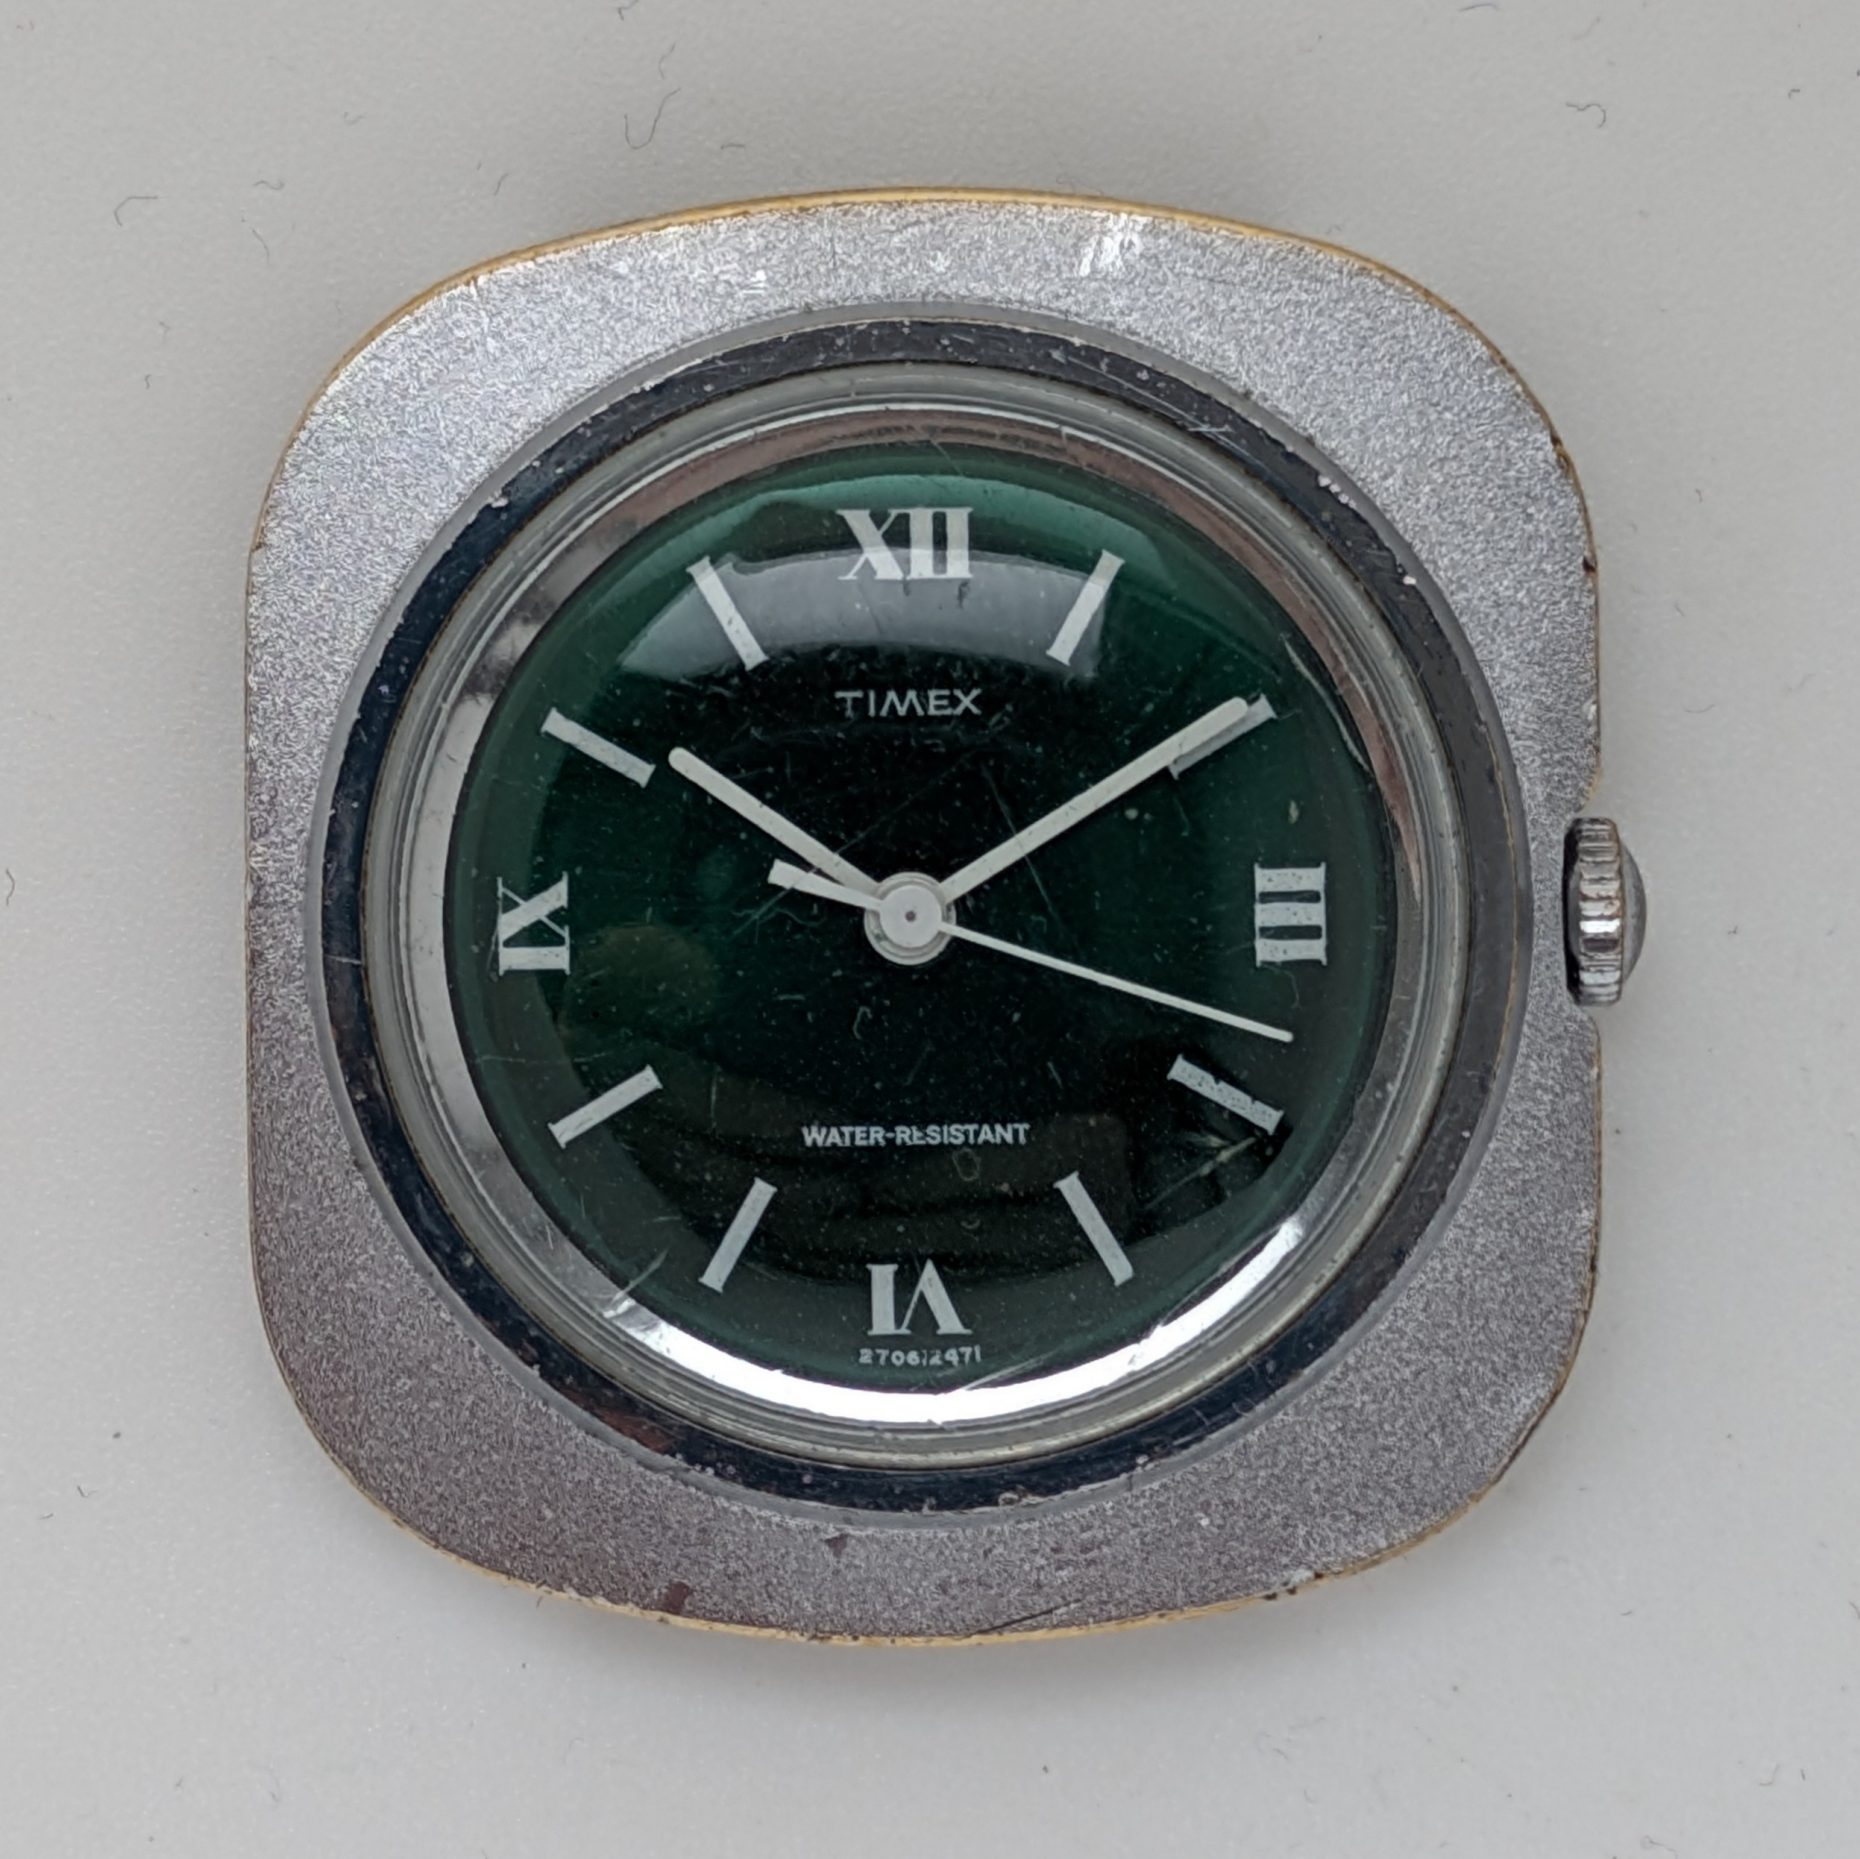 Timex Marlin 1971 Ref. 27061 2471